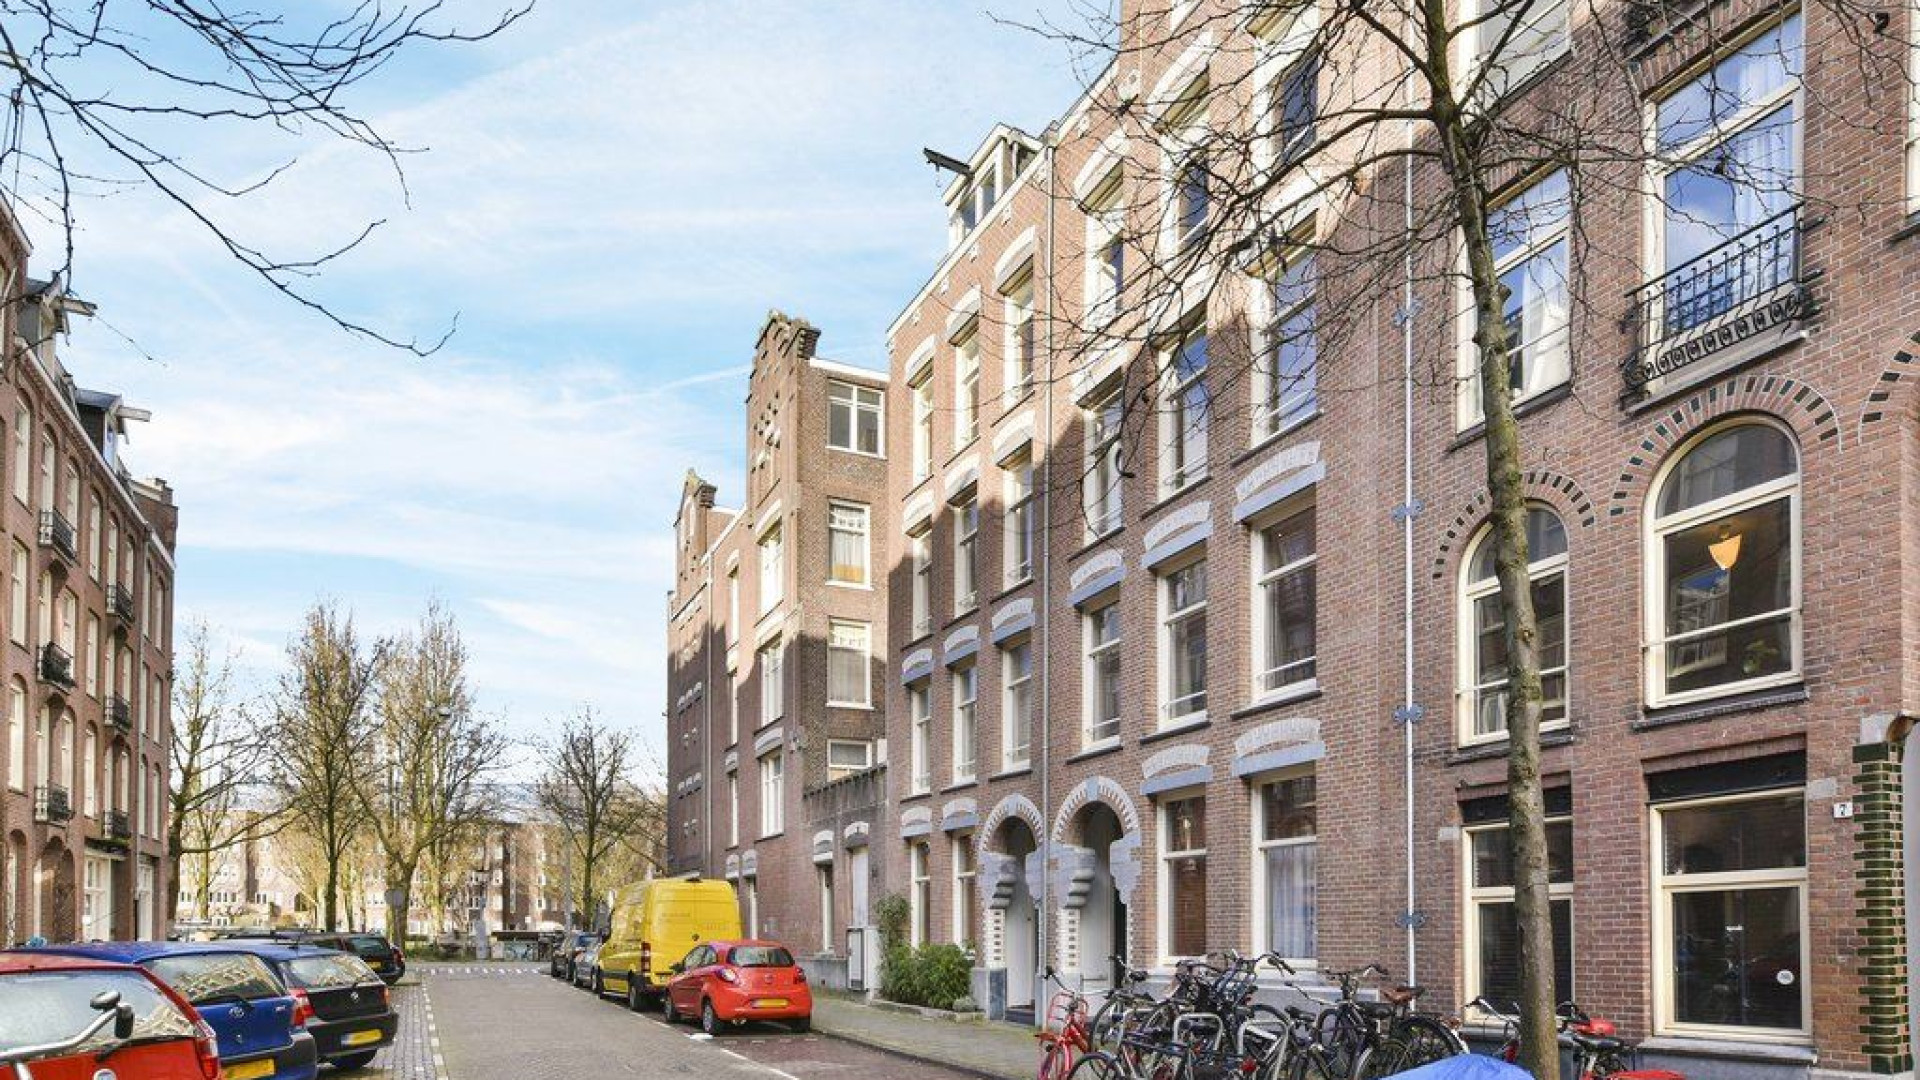 Humberto Tan verhuurt zijn appartement in de Pijp in Amsterdam. Zie foto's